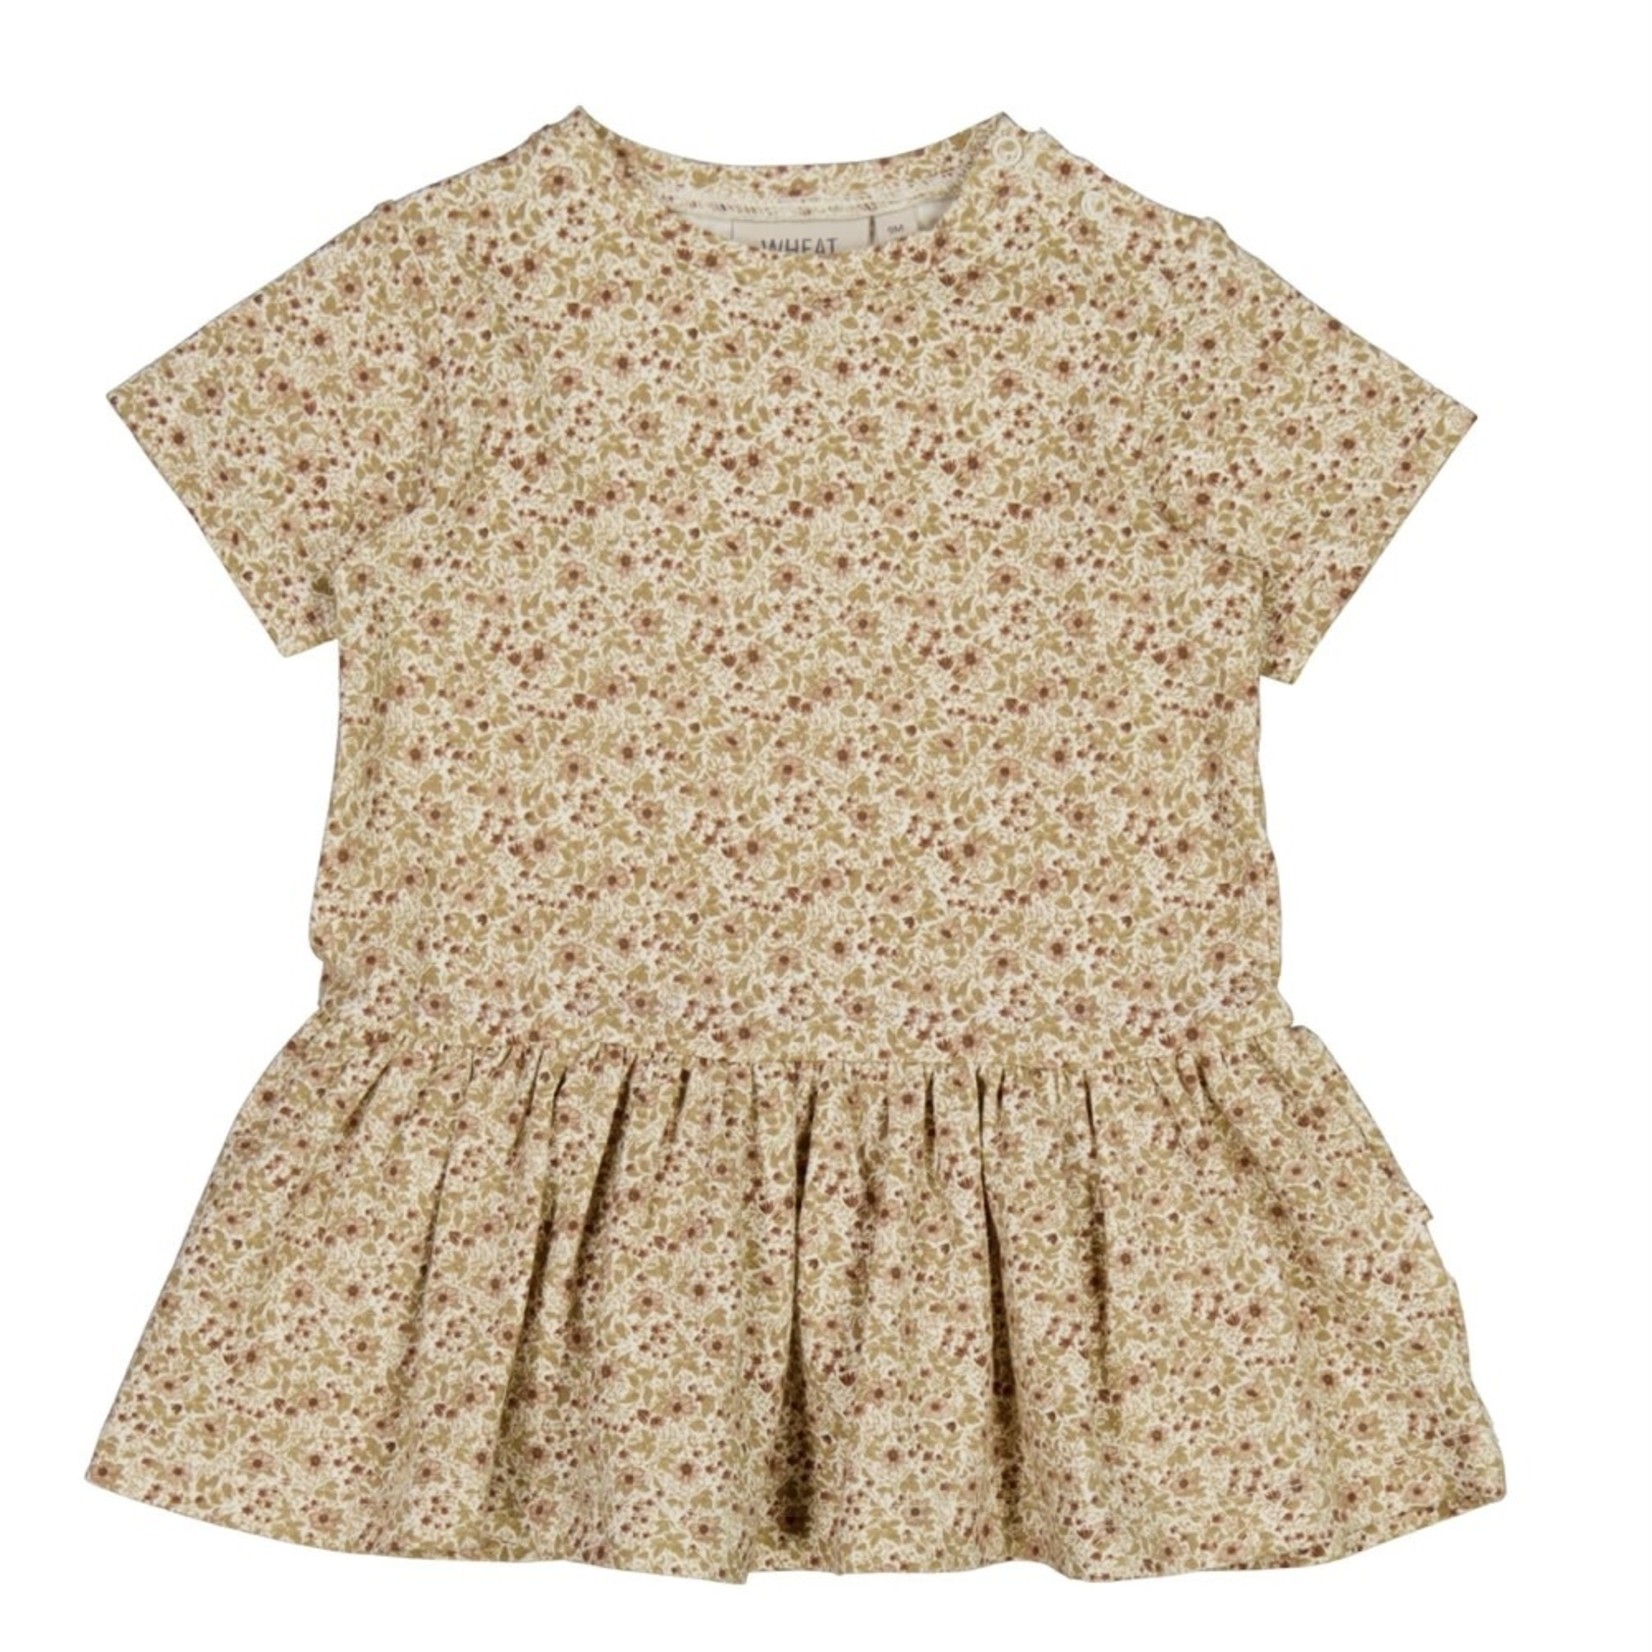 Wheat Wheat - Birthe Jersey Dress